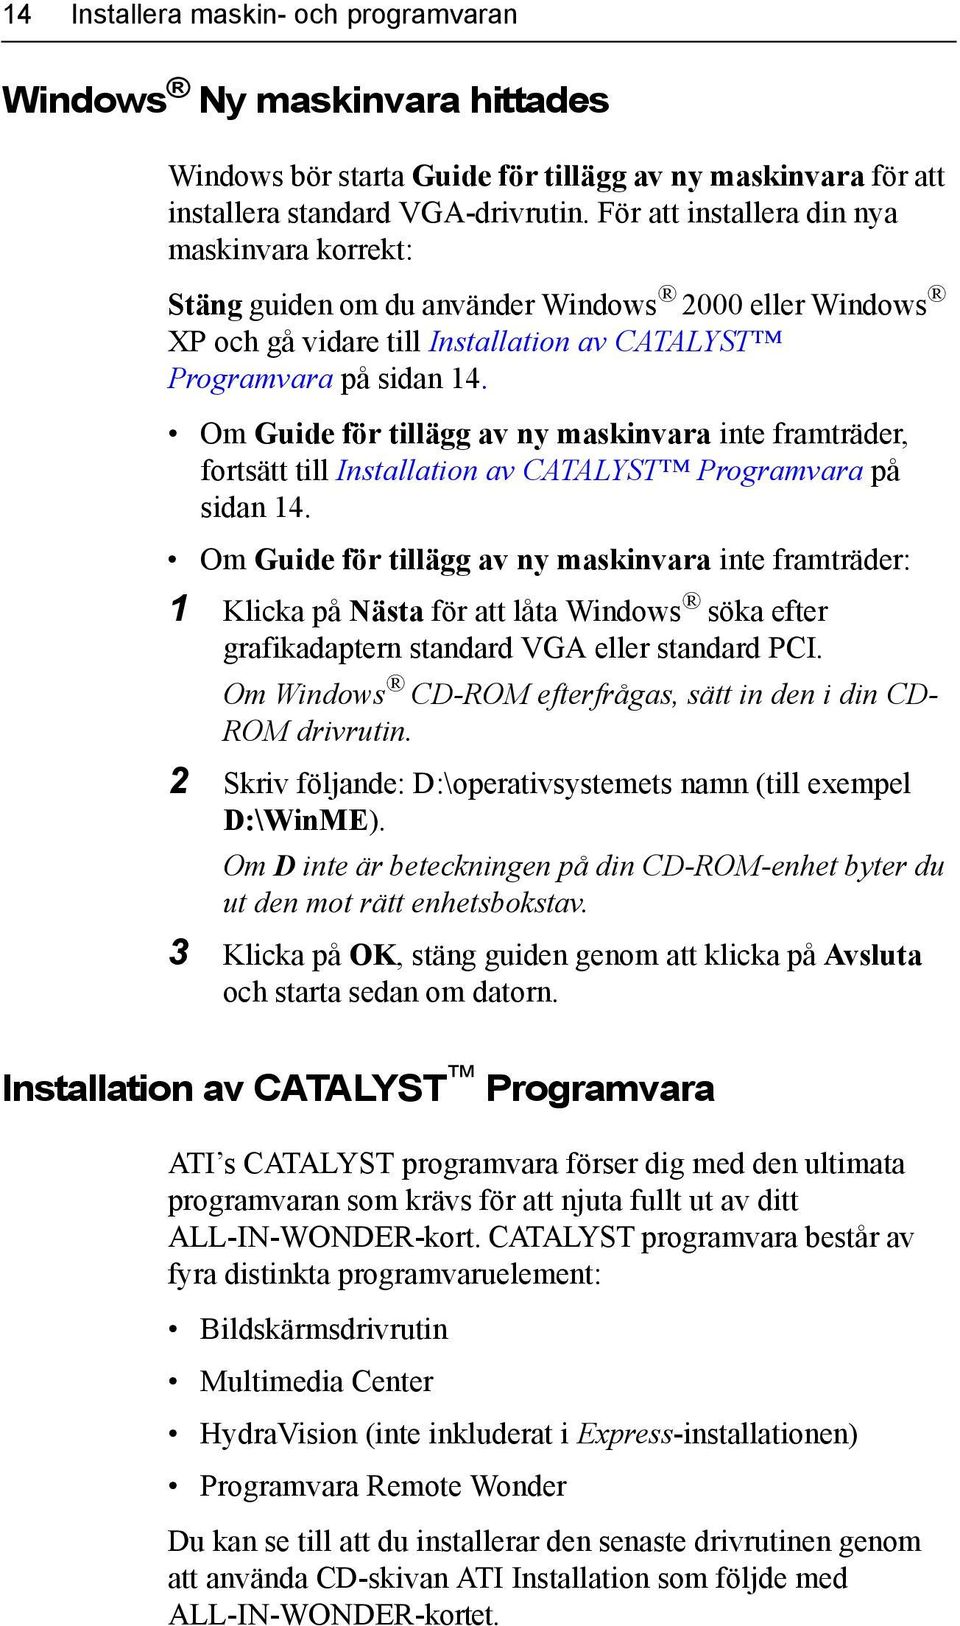 Om Guide för tillägg av ny maskinvara inte framträder, fortsätt till Installation av CATALYST Programvara på sidan 14.